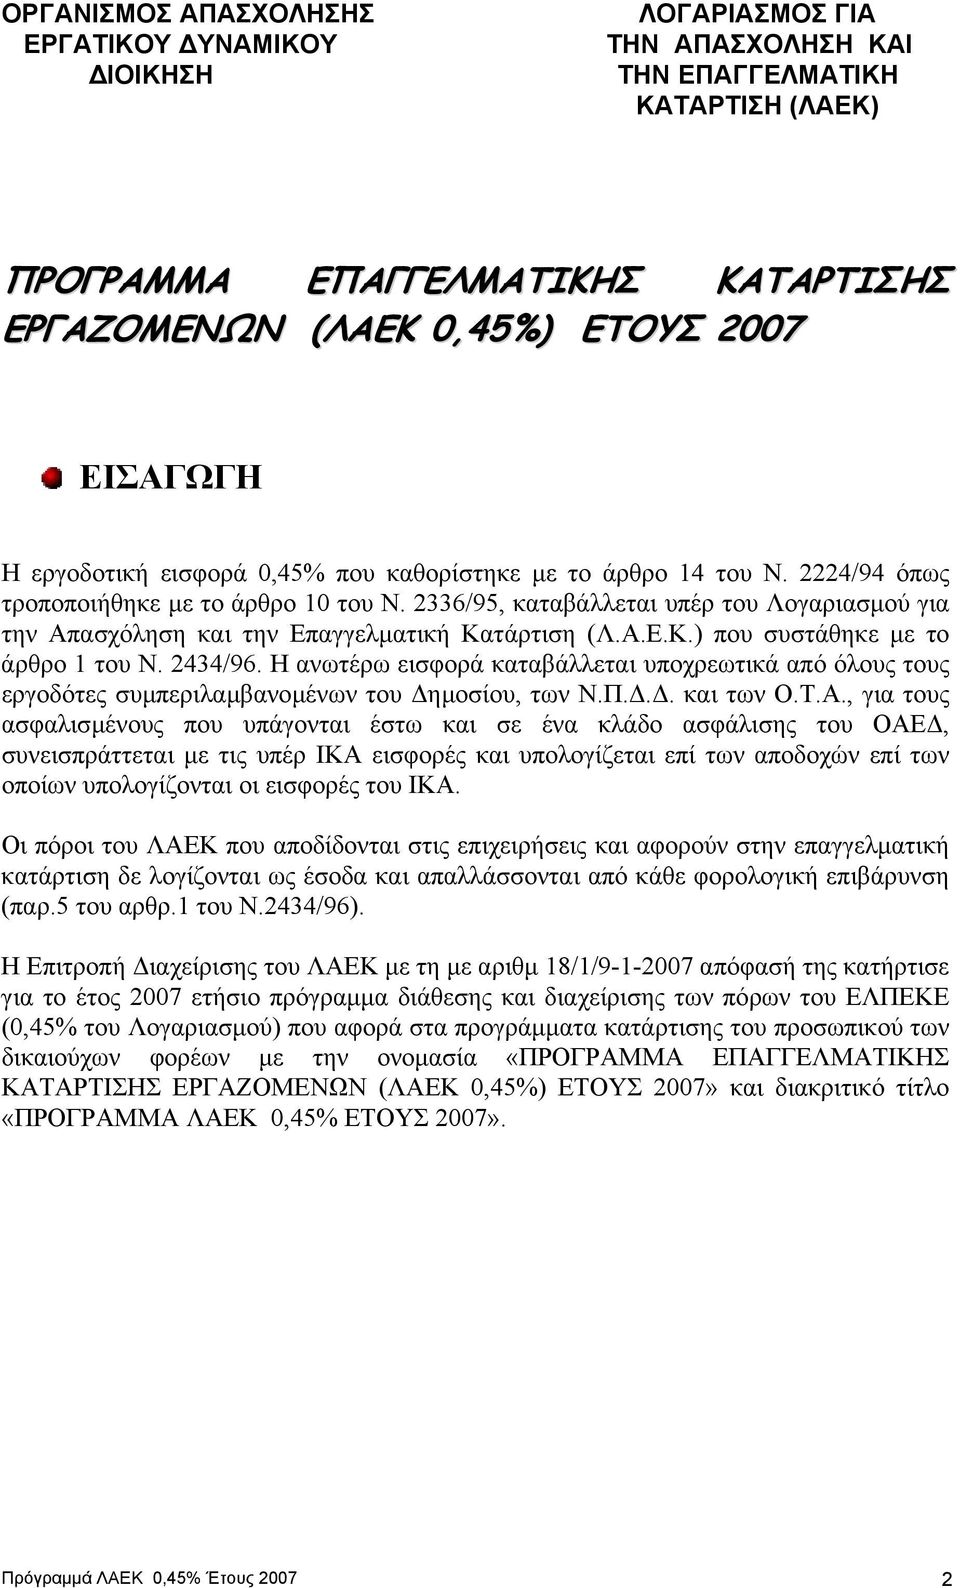 2336/95, καταβάλλεται υπέρ του Λογαριασµού για την Απασχόληση και την Επαγγελµατική Κατάρτιση (Λ.Α.Ε.Κ.) που συστάθηκε µε το άρθρο 1 του Ν. 2434/96.